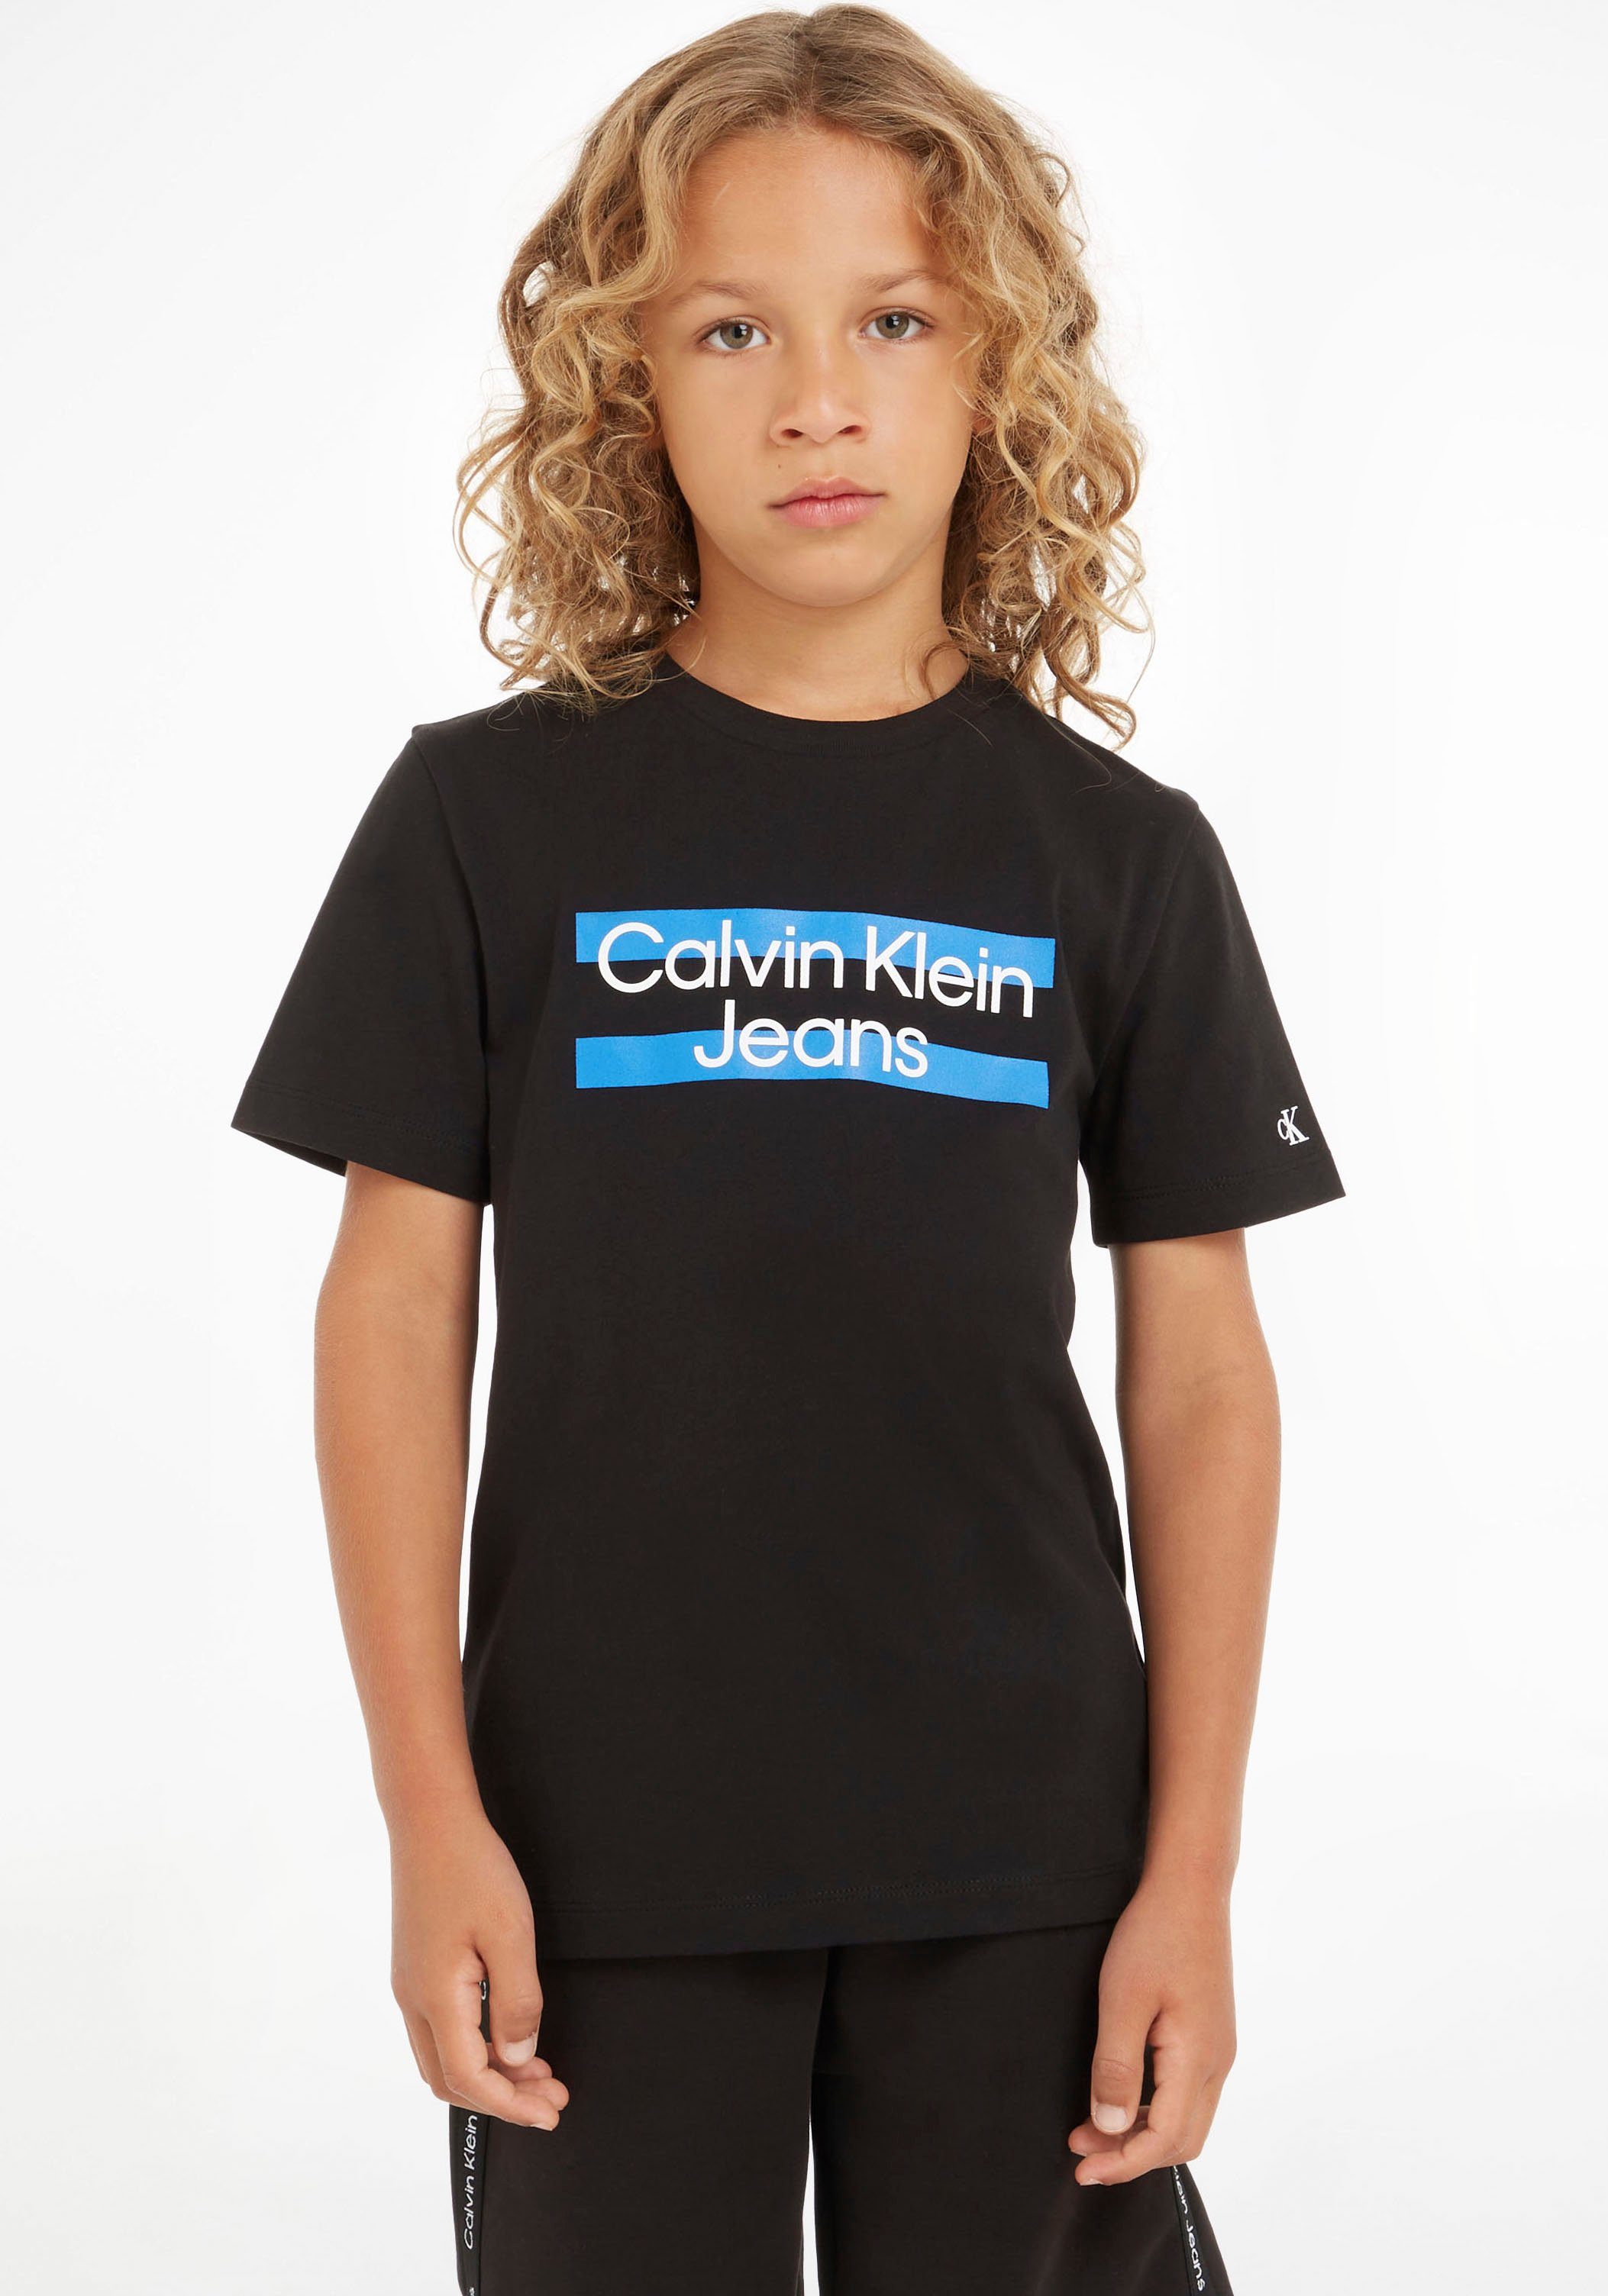 Wir bieten es zu einem tollen Preis an! Calvin Klein Jeans Klein schwarz T-Shirt auf Logodruck der mit Calvin Brust